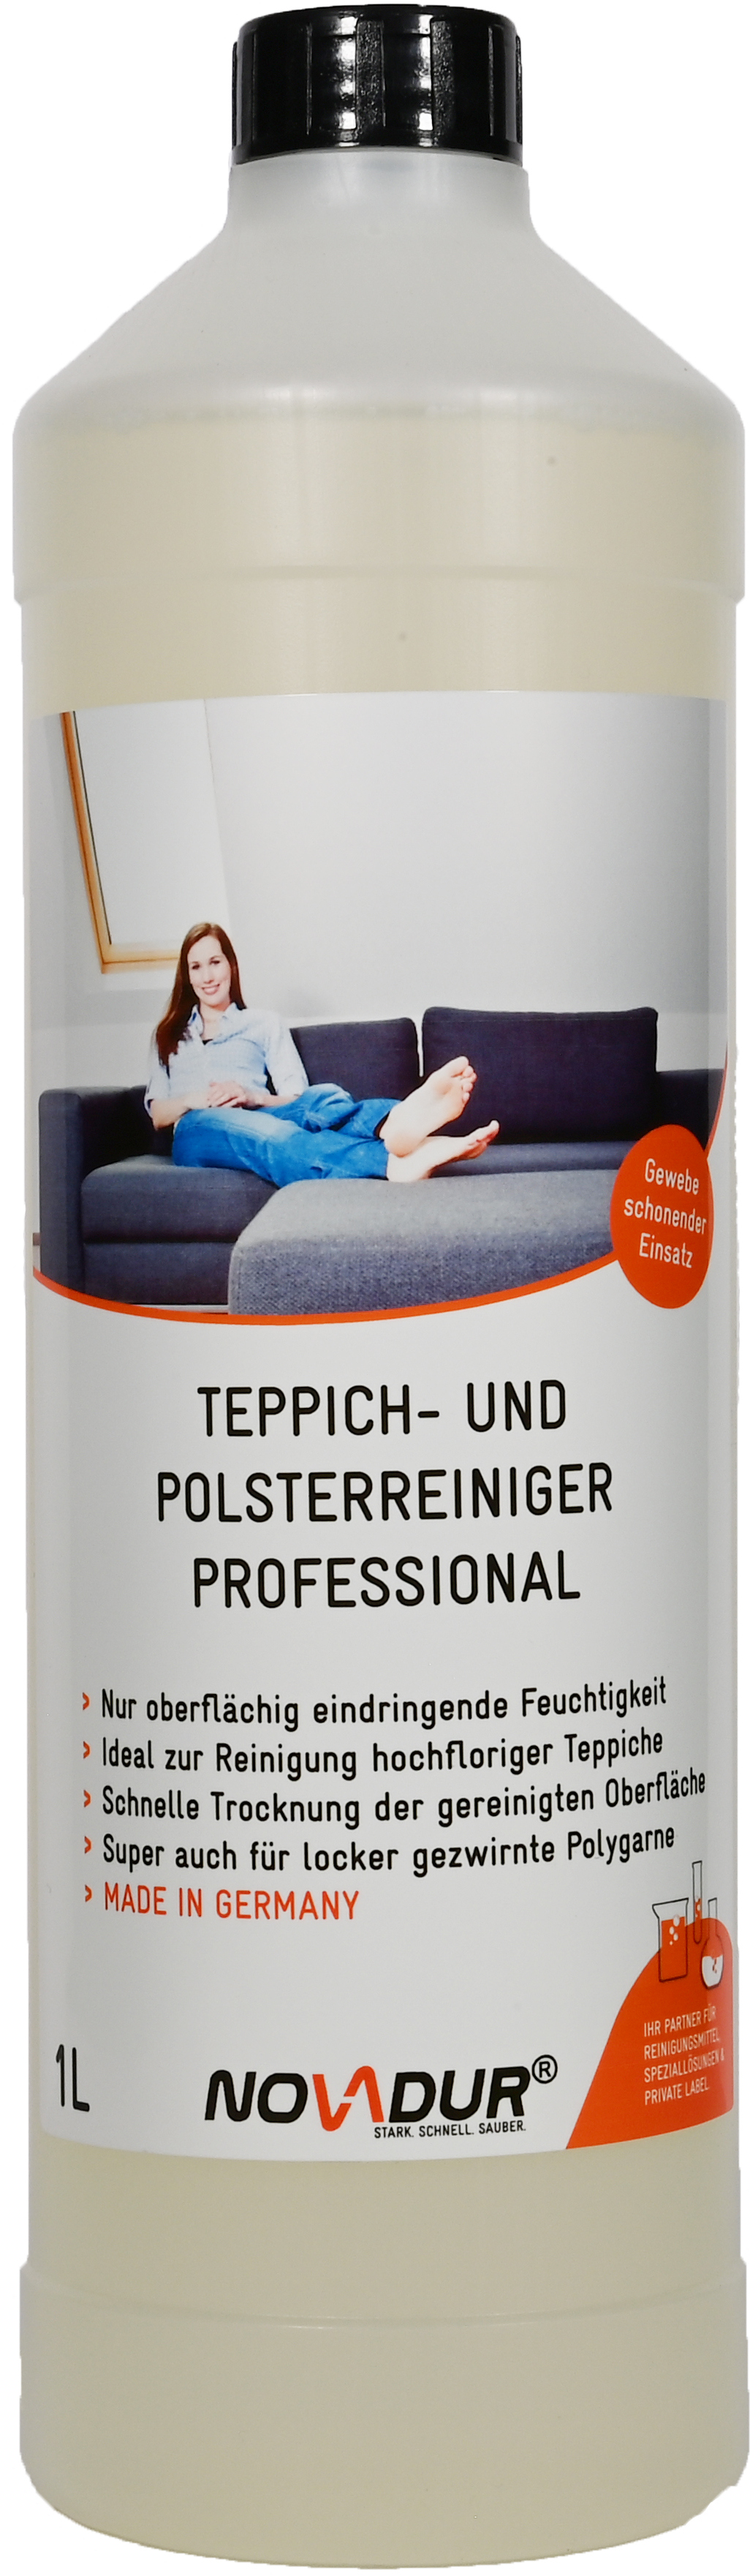 Teppich-/Polsterreiniger